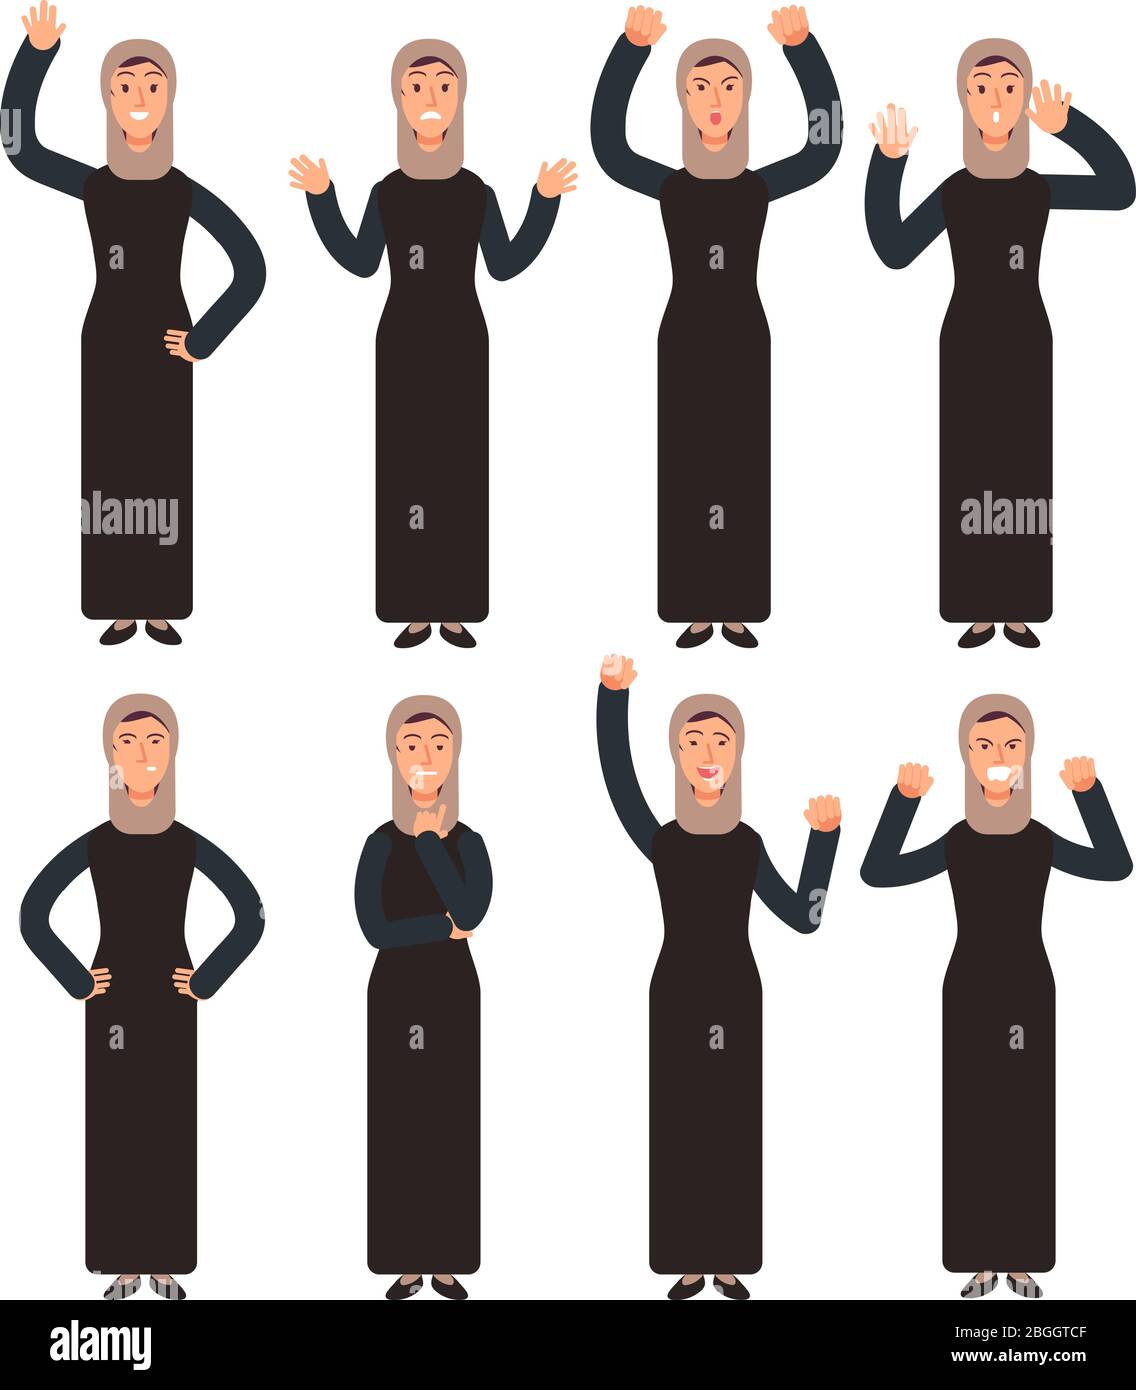 Femme arabe debout avec des gestes de main différents et des émotions de visage. Jeu de caractères vectoriels musulmans féminins. Illustration du caractère musulman, de l'émotion de la femme arabe Illustration de Vecteur